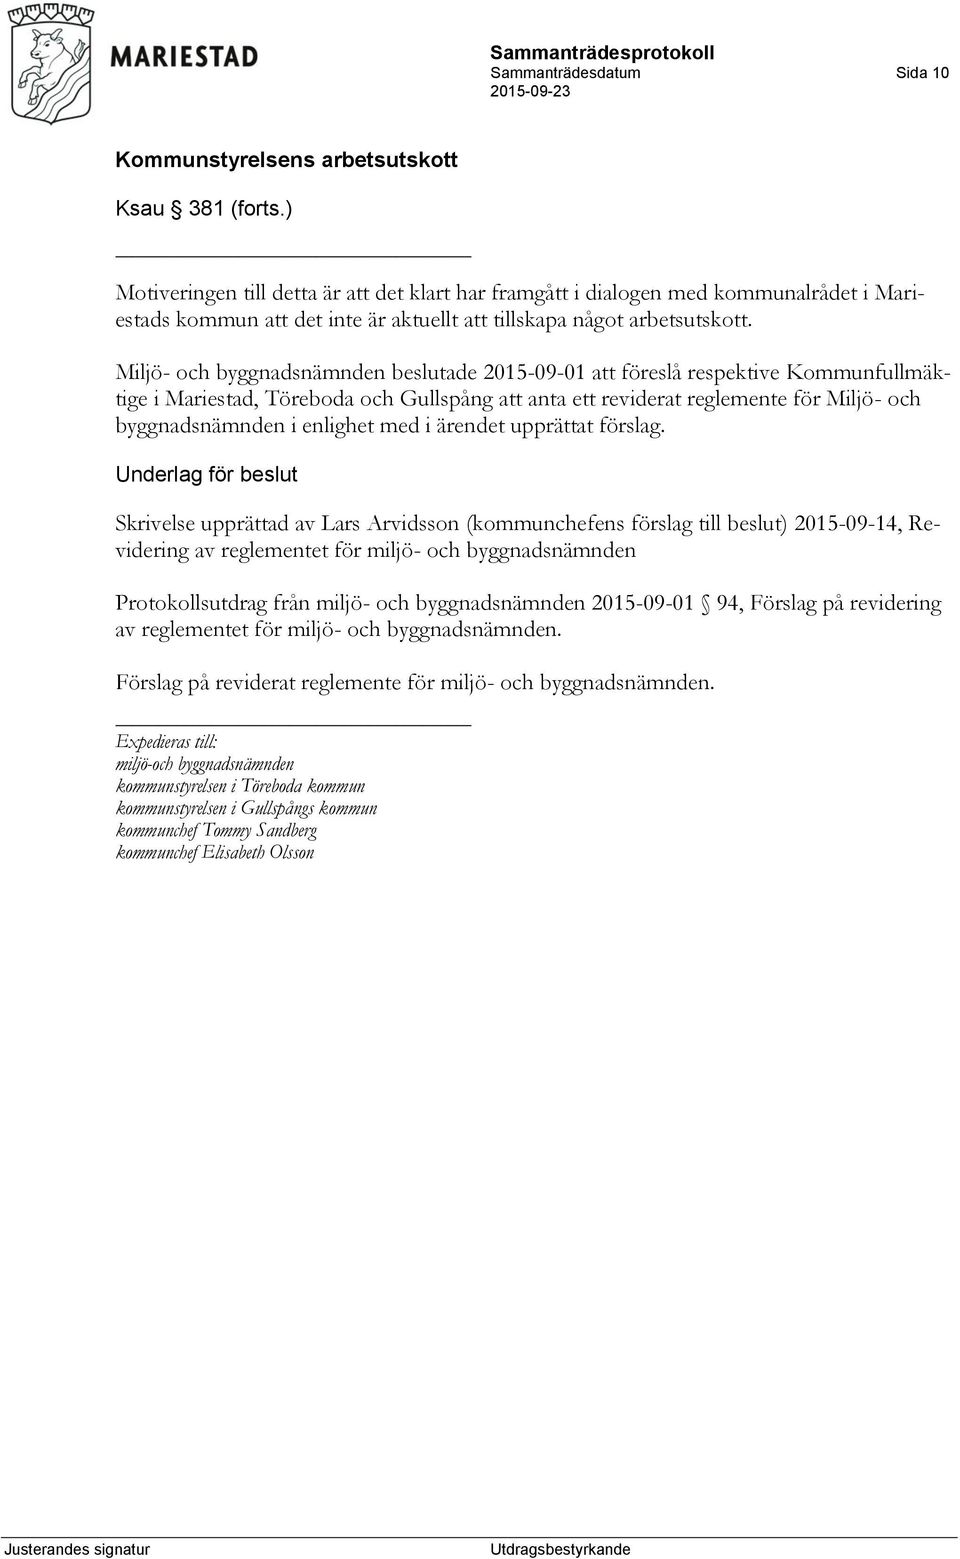 Miljö- och byggnadsnämnden beslutade 2015-09-01 att föreslå respektive Kommunfullmäktige i Mariestad, Töreboda och Gullspång att anta ett reviderat reglemente för Miljö- och byggnadsnämnden i